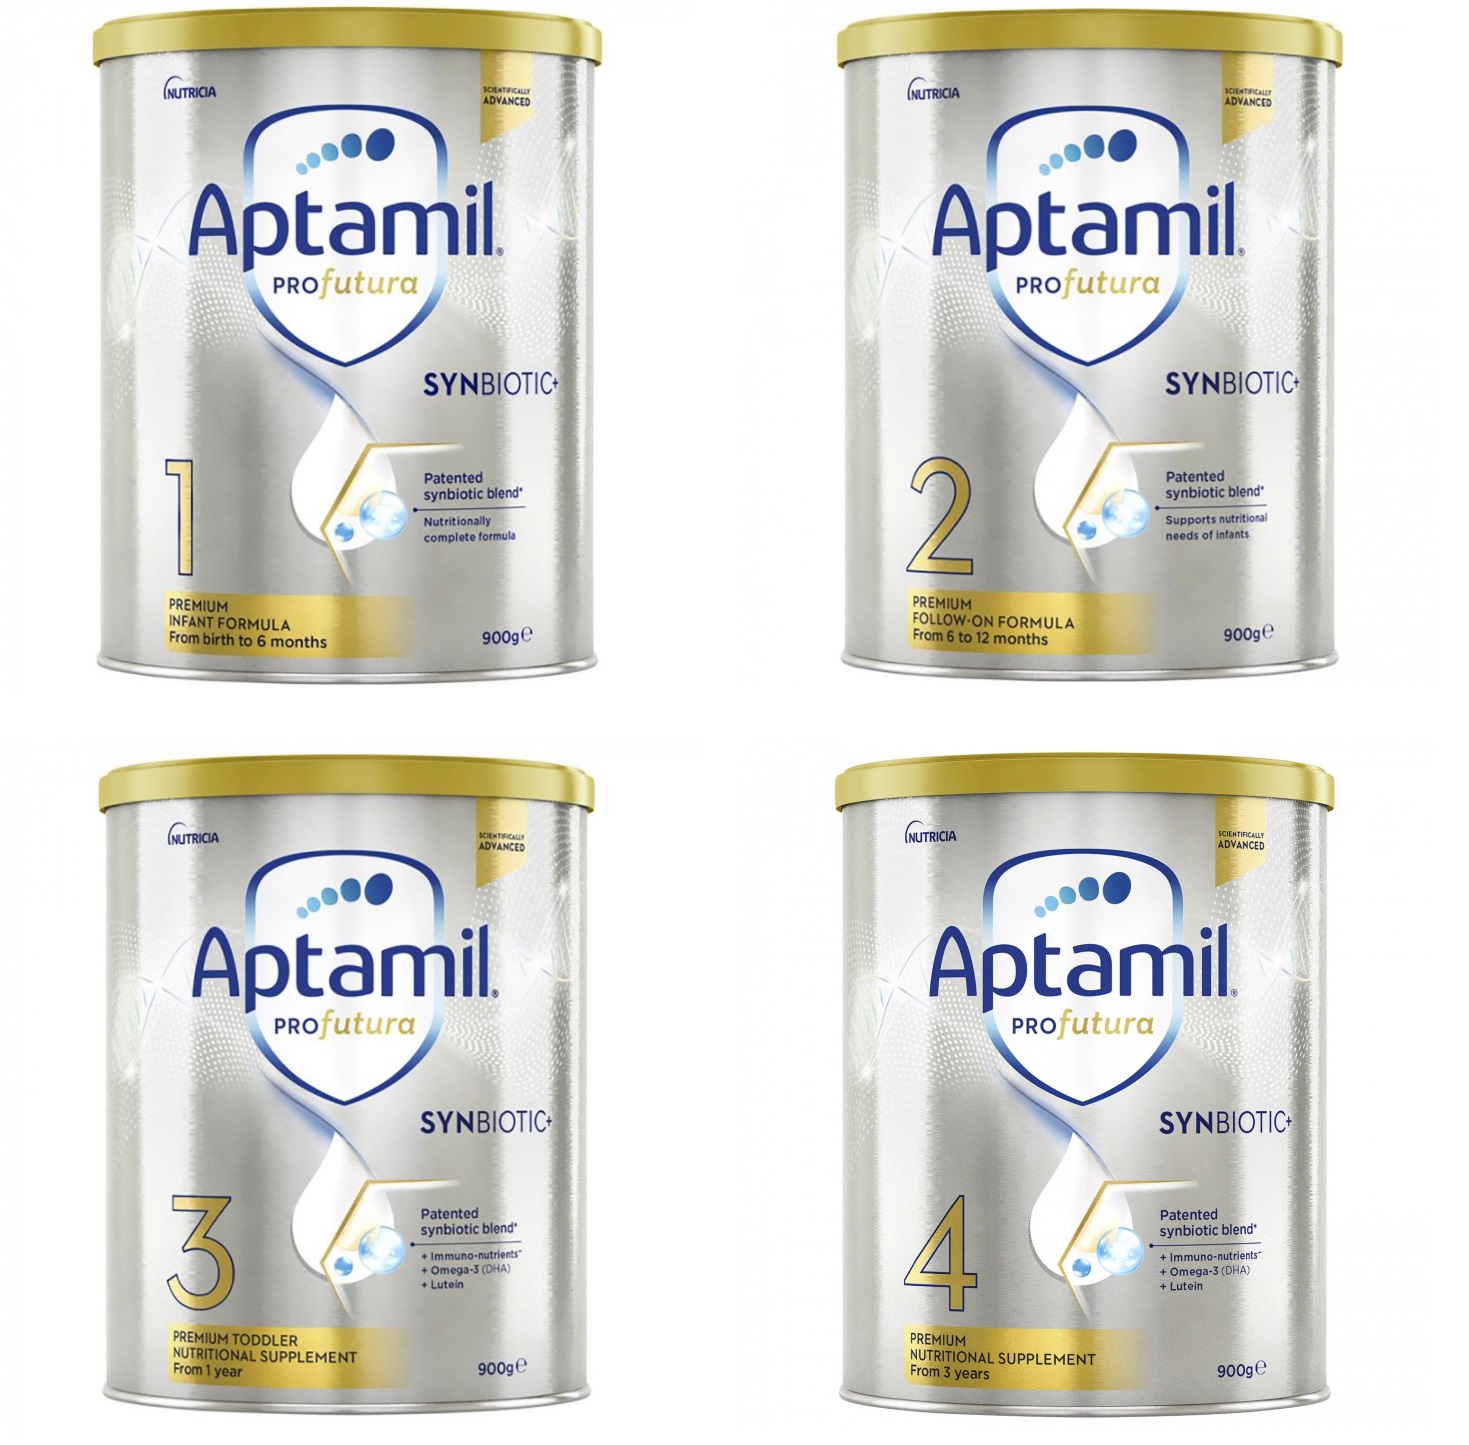 Sữa Aptamil Profutura Úc